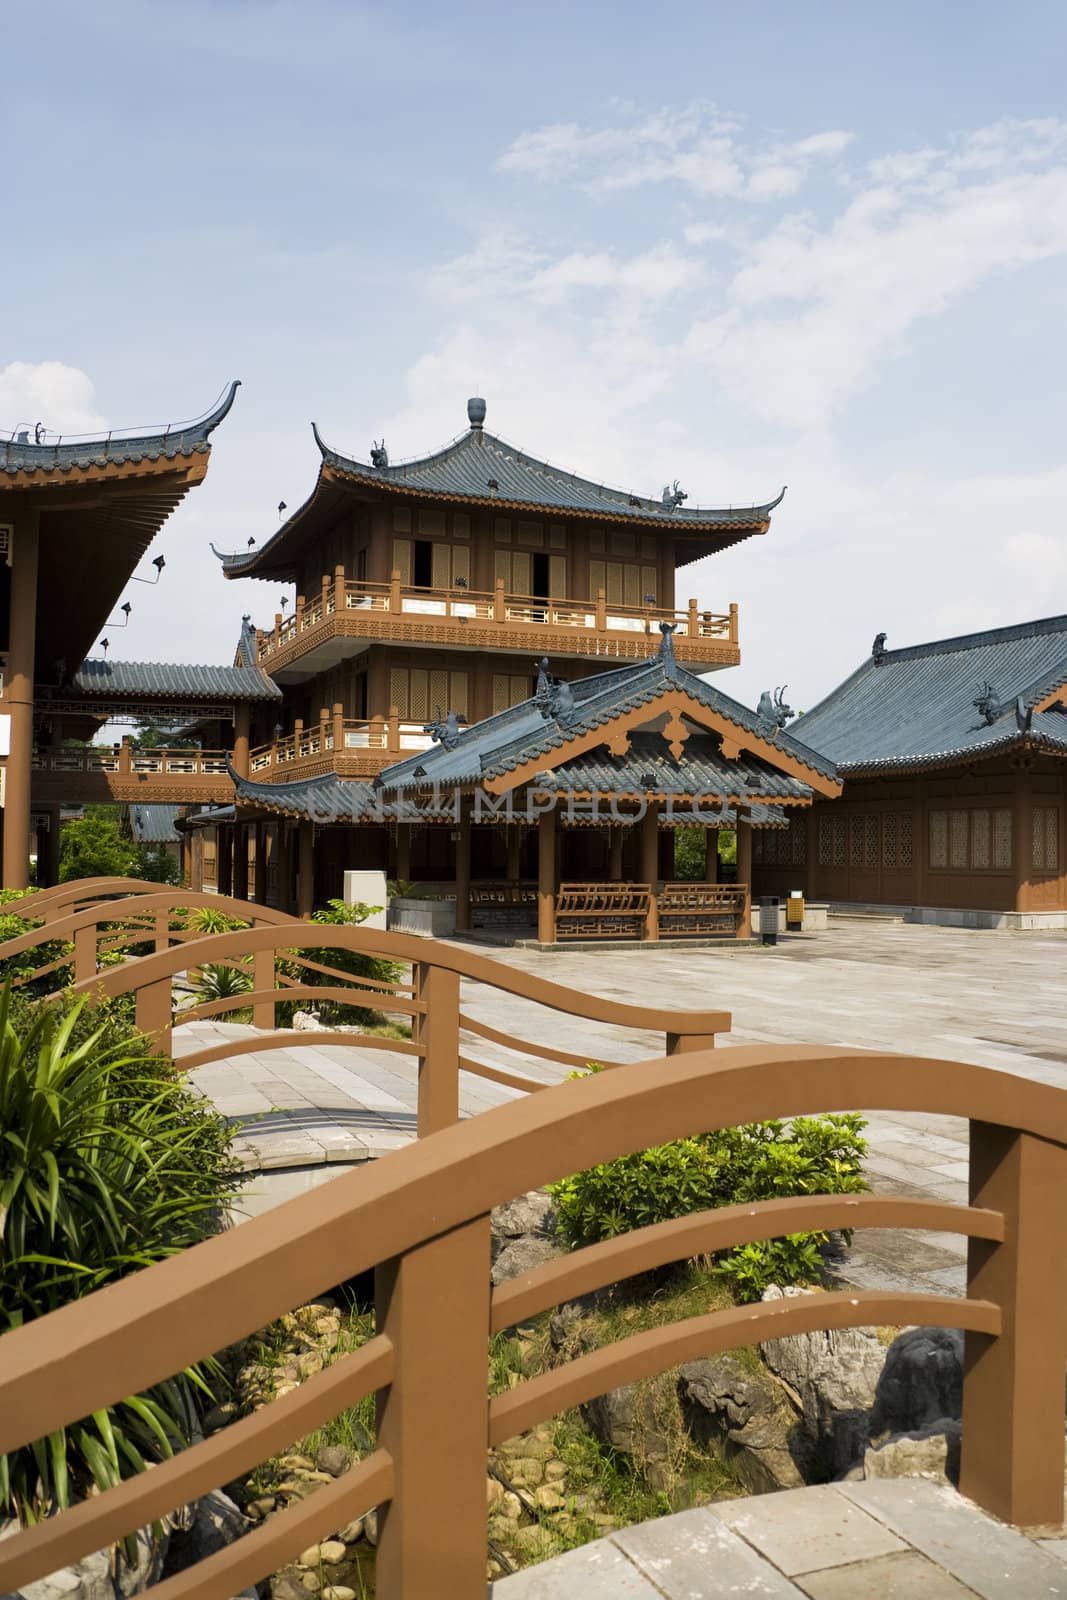 Image of Mulong Lake buildings at Guilin, China.